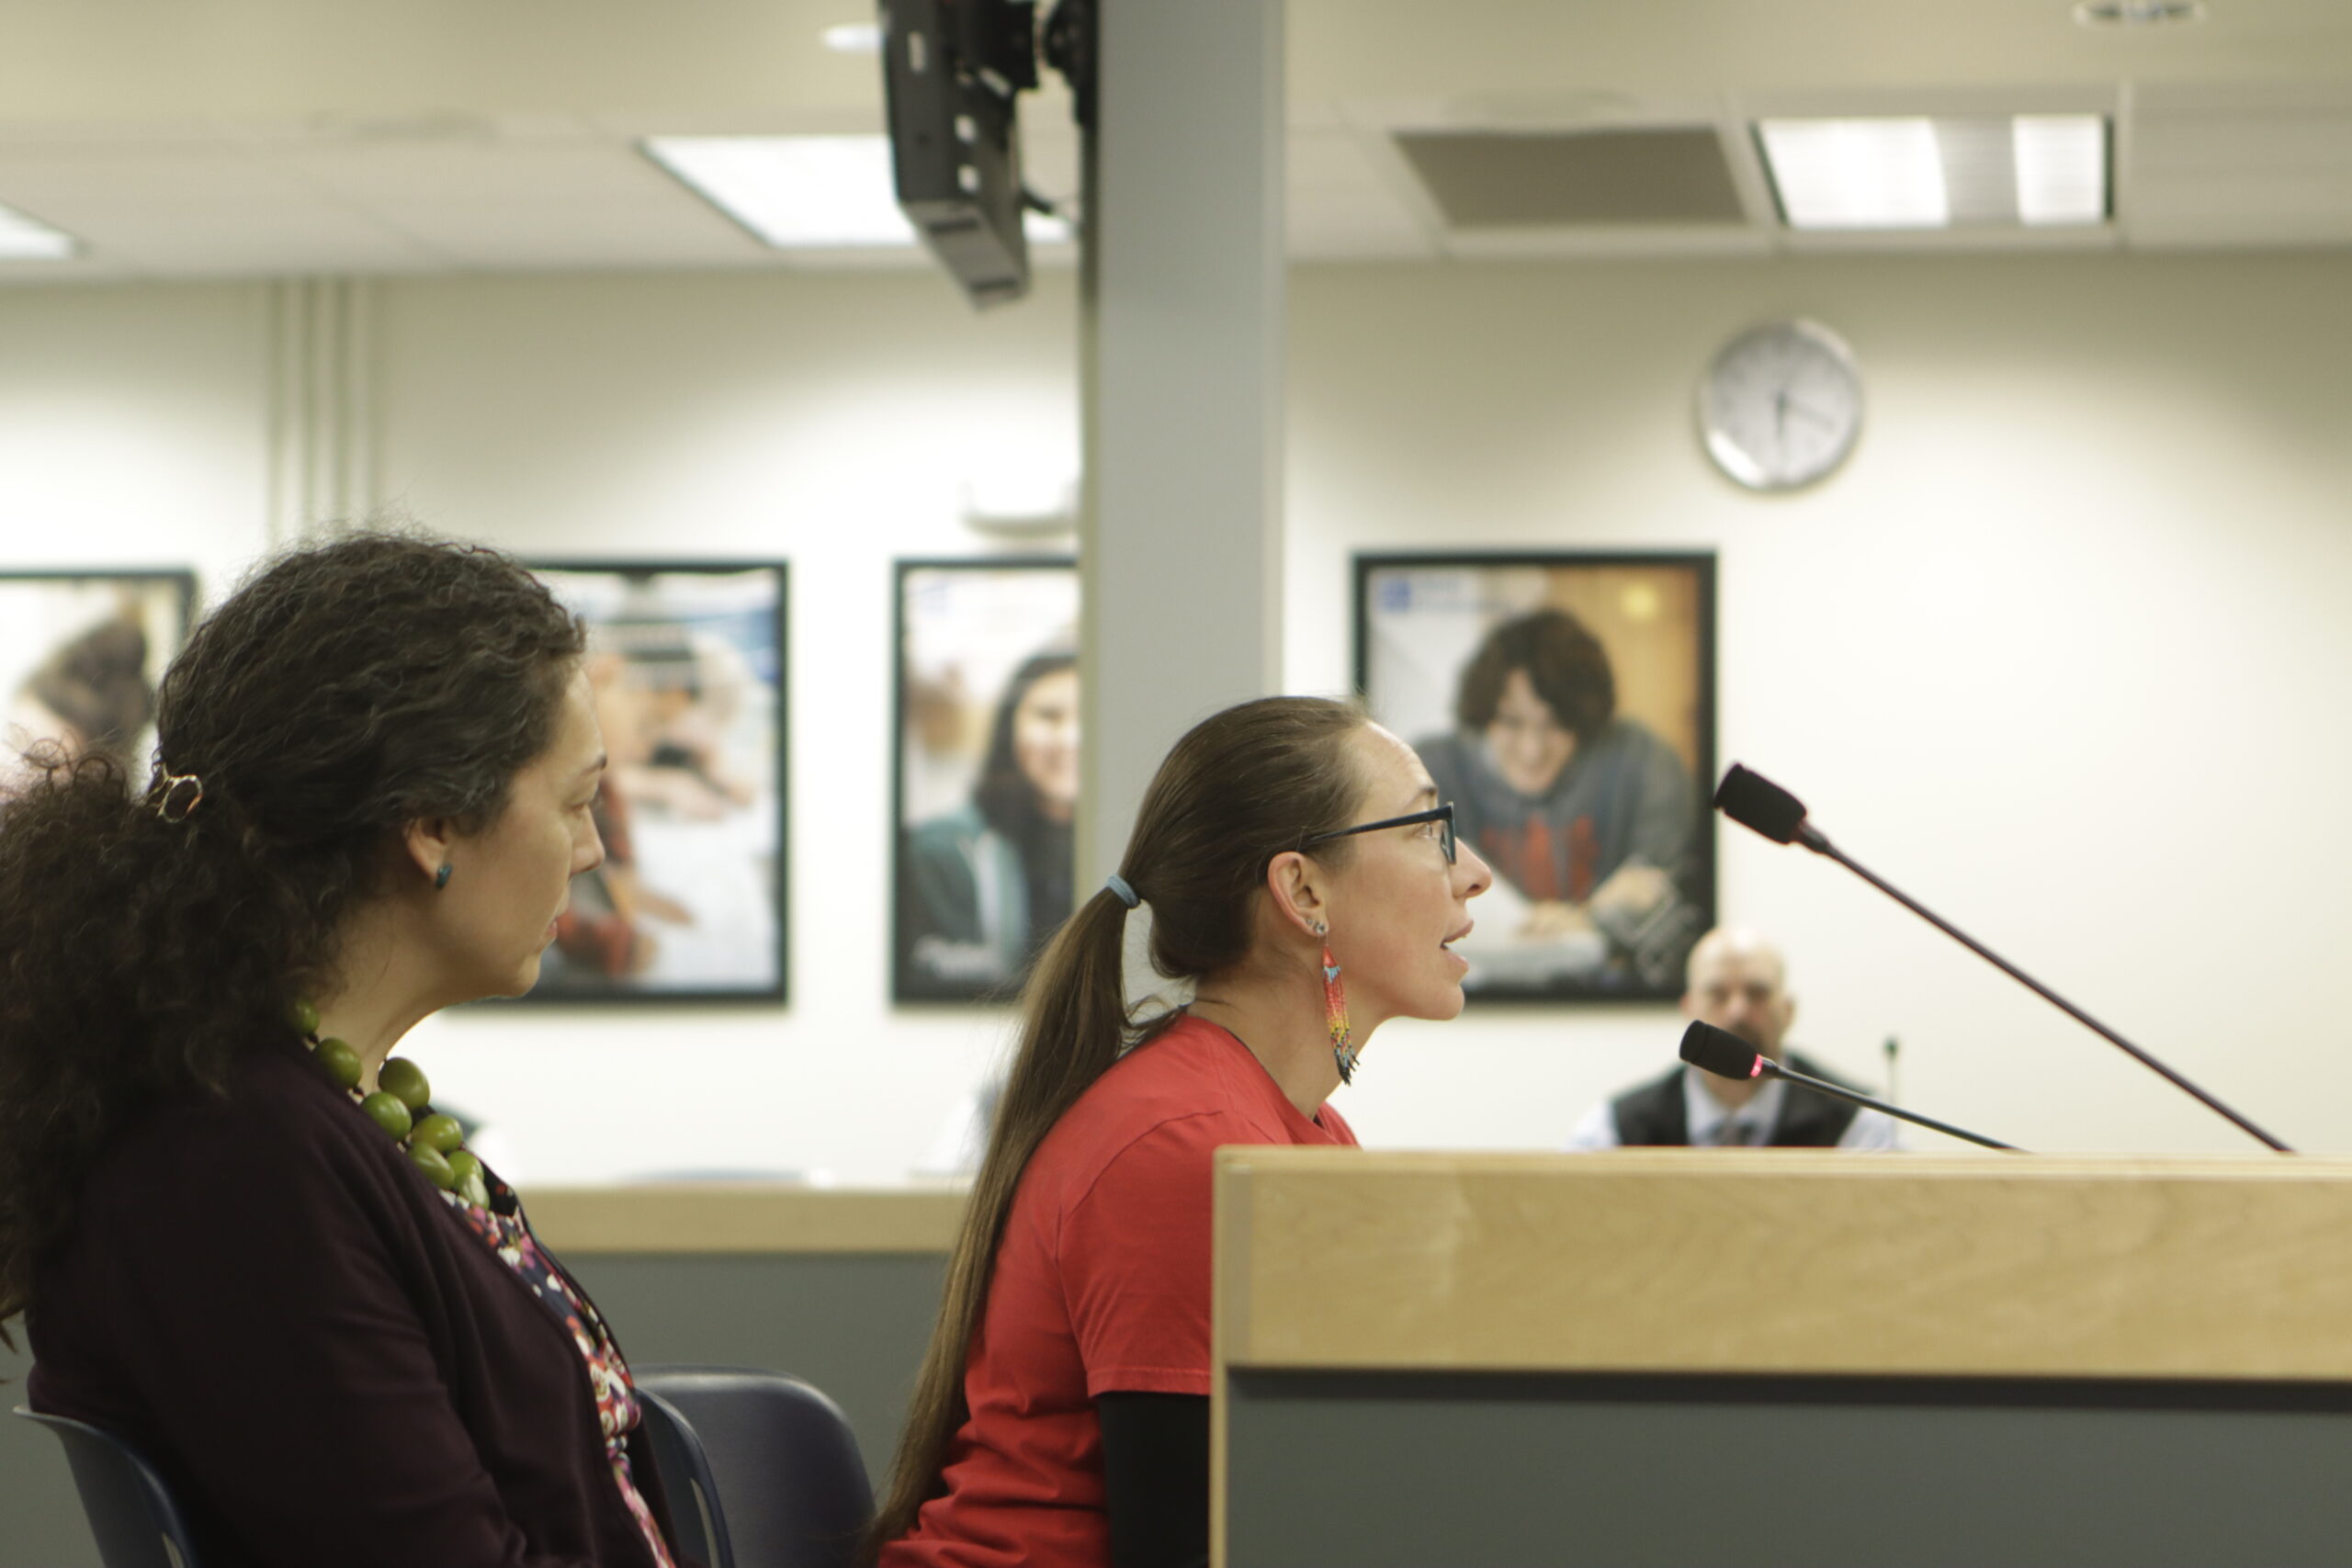 Chugiak IGNITE teacher Katharine Thomas testifies to the Anchorage School Board about the program.